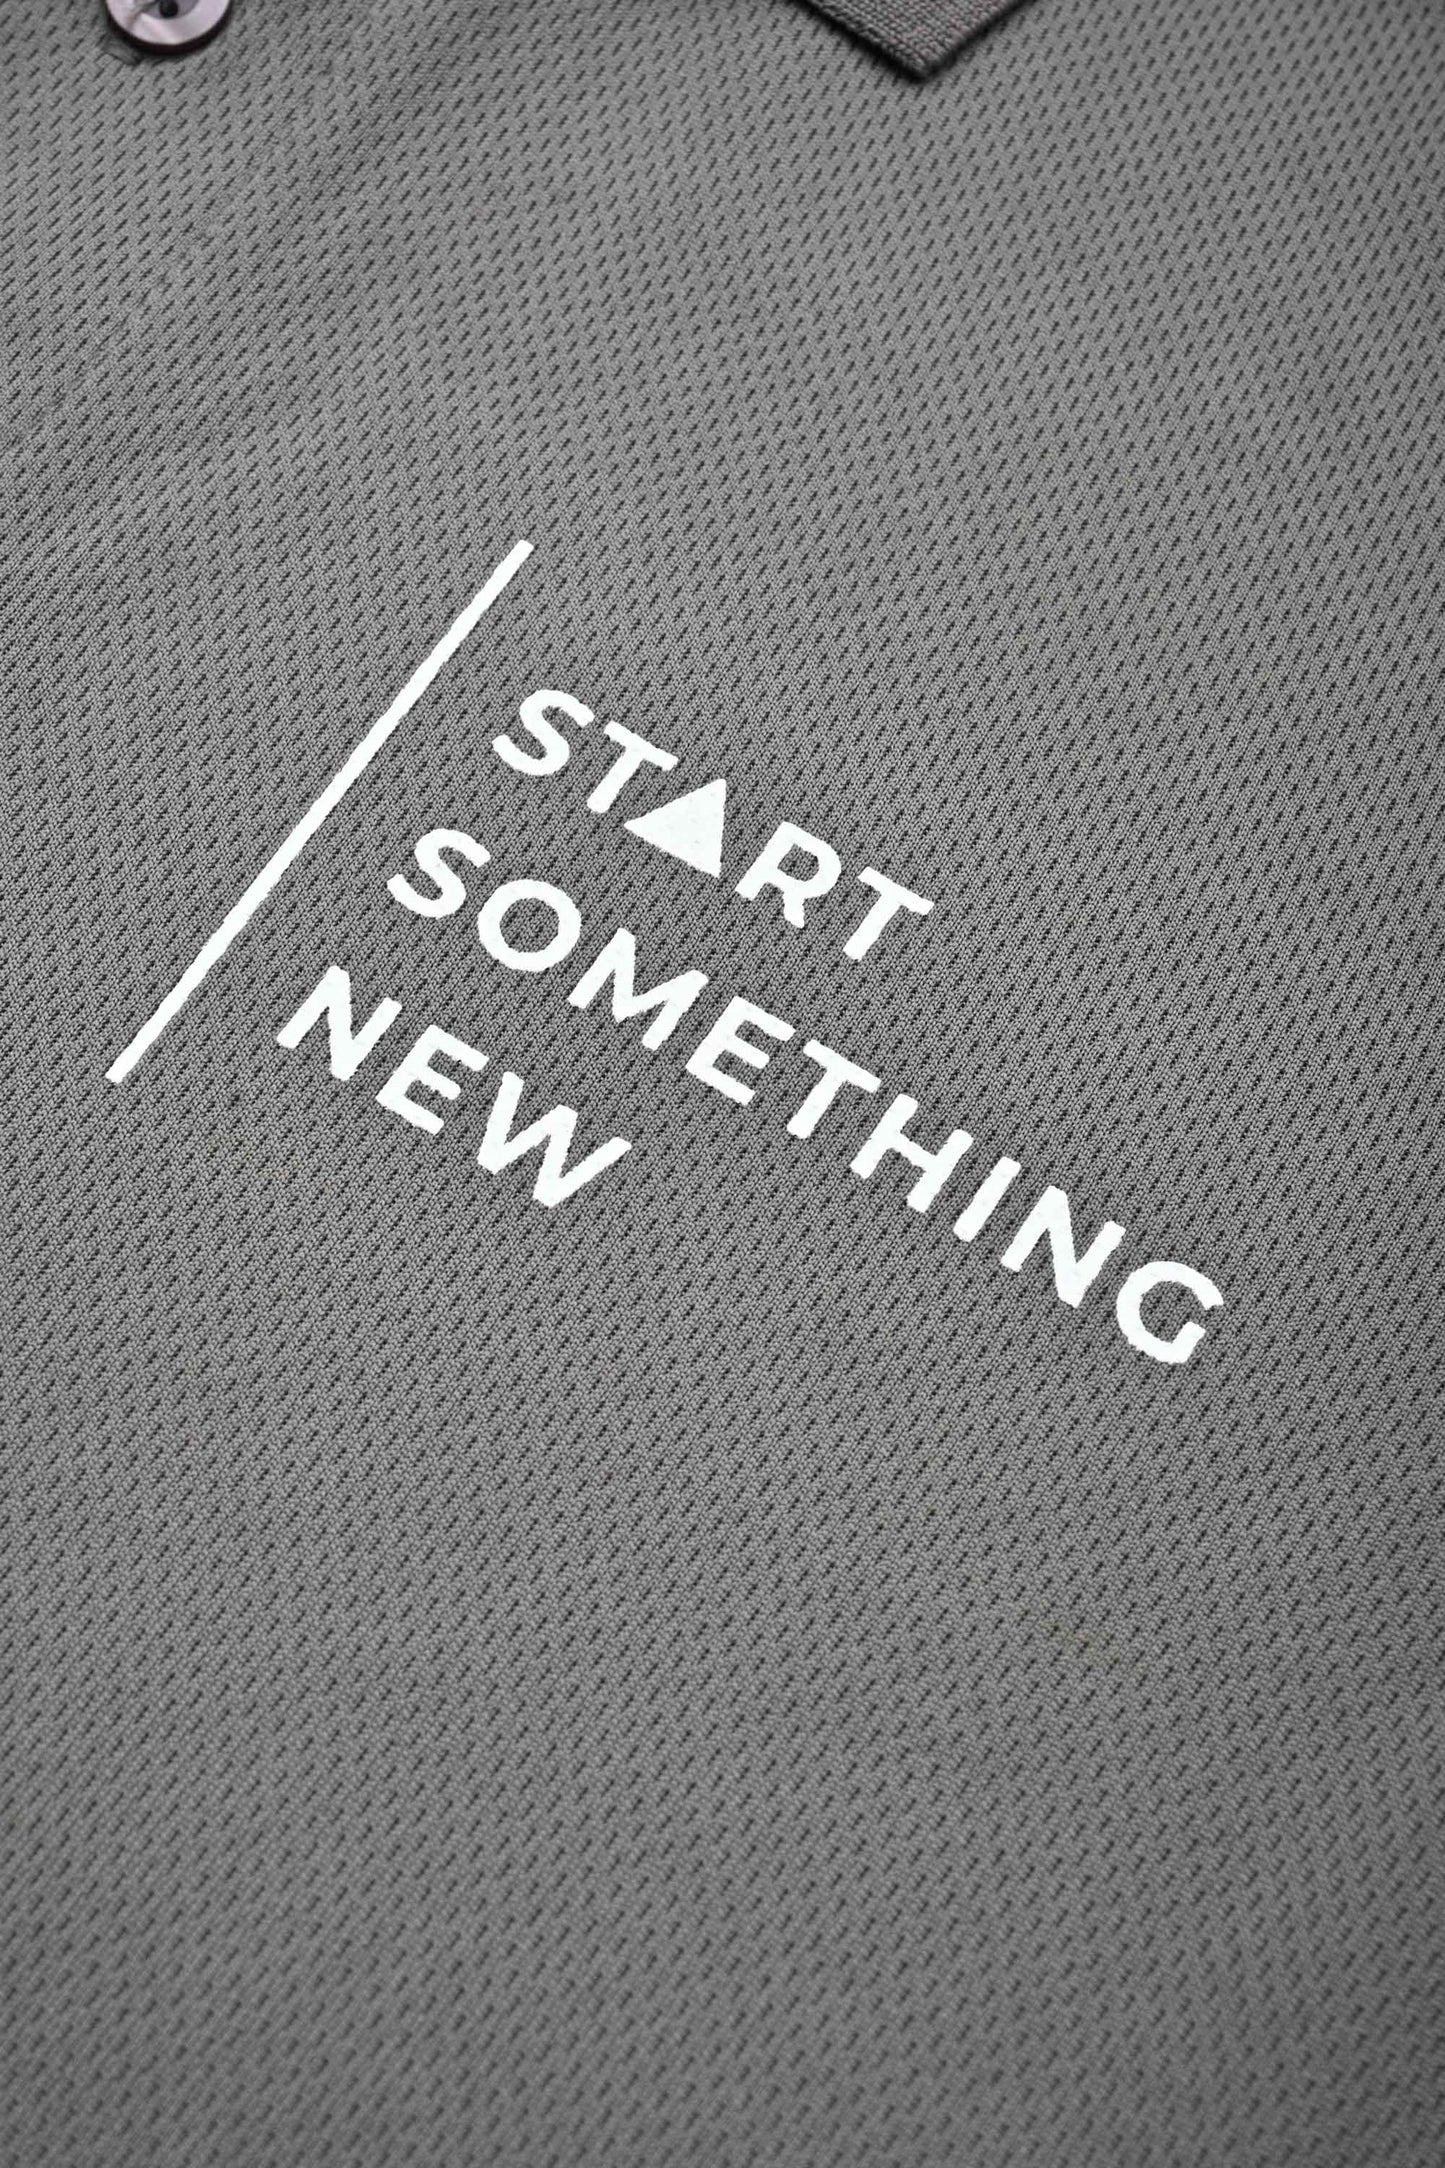 Polo Republica Men's Start Something New Printed Activewear Polo Shirt Men's Polo Shirt Polo Republica 